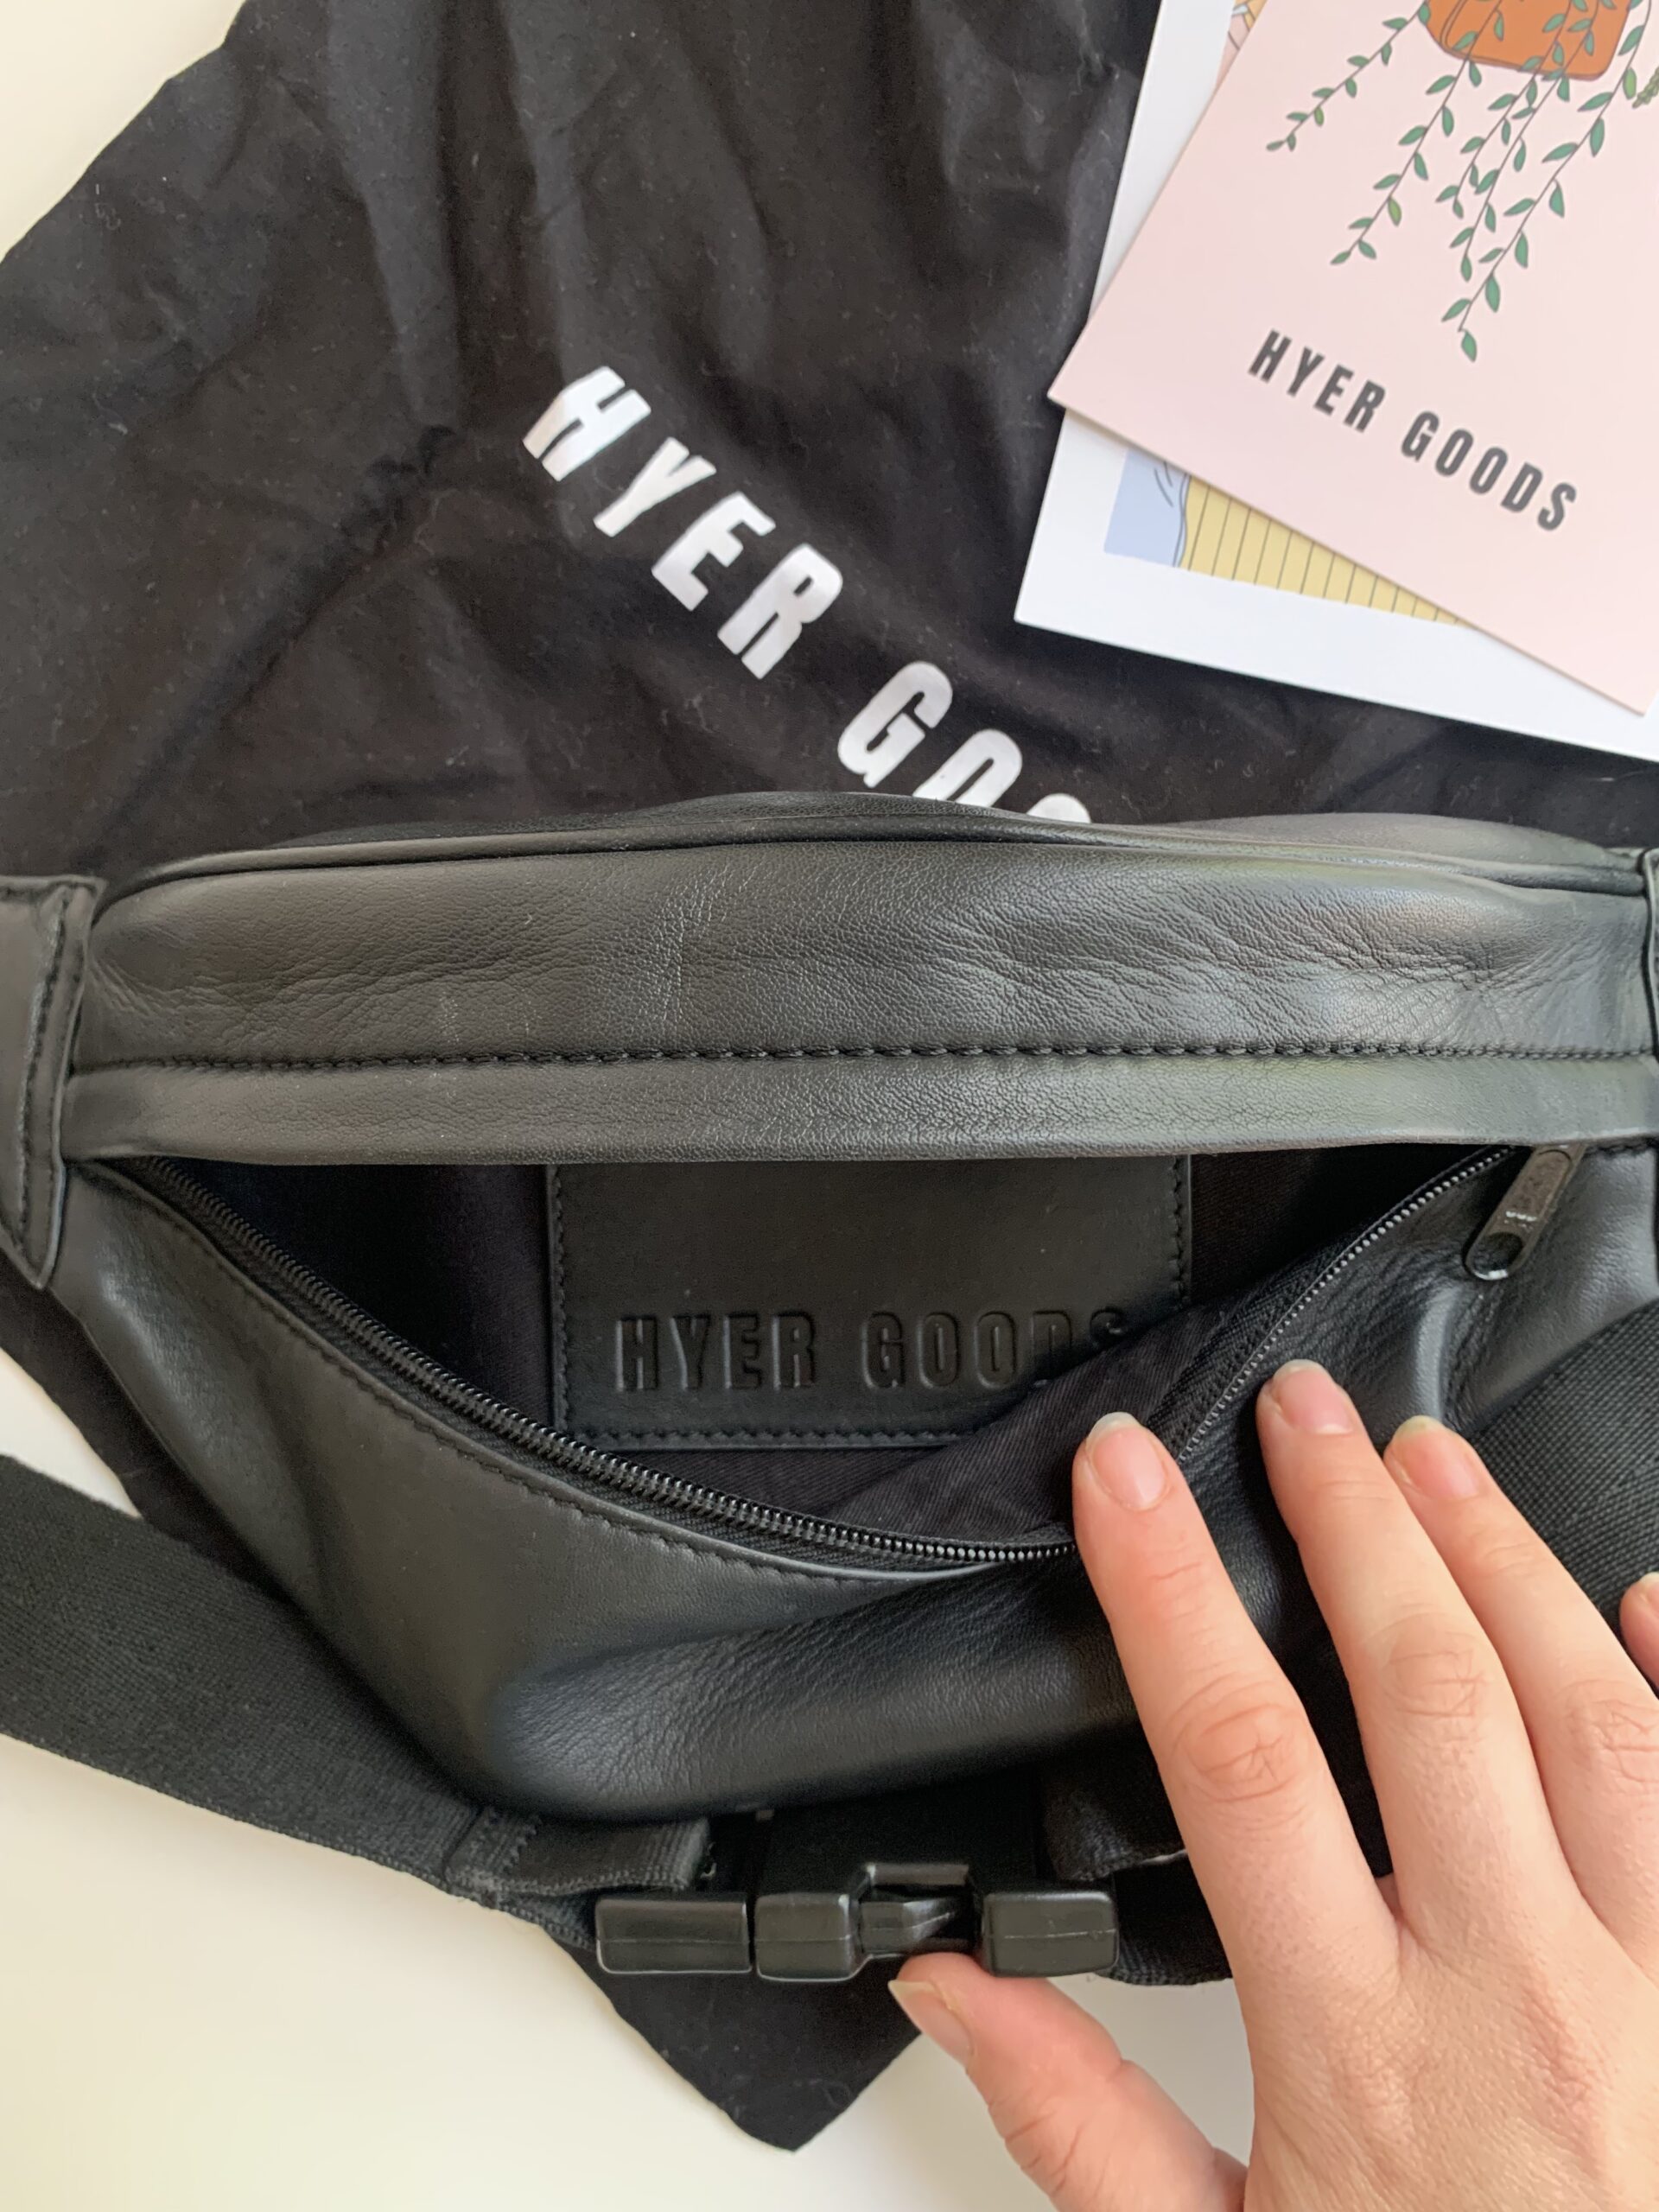 hyer goods bag